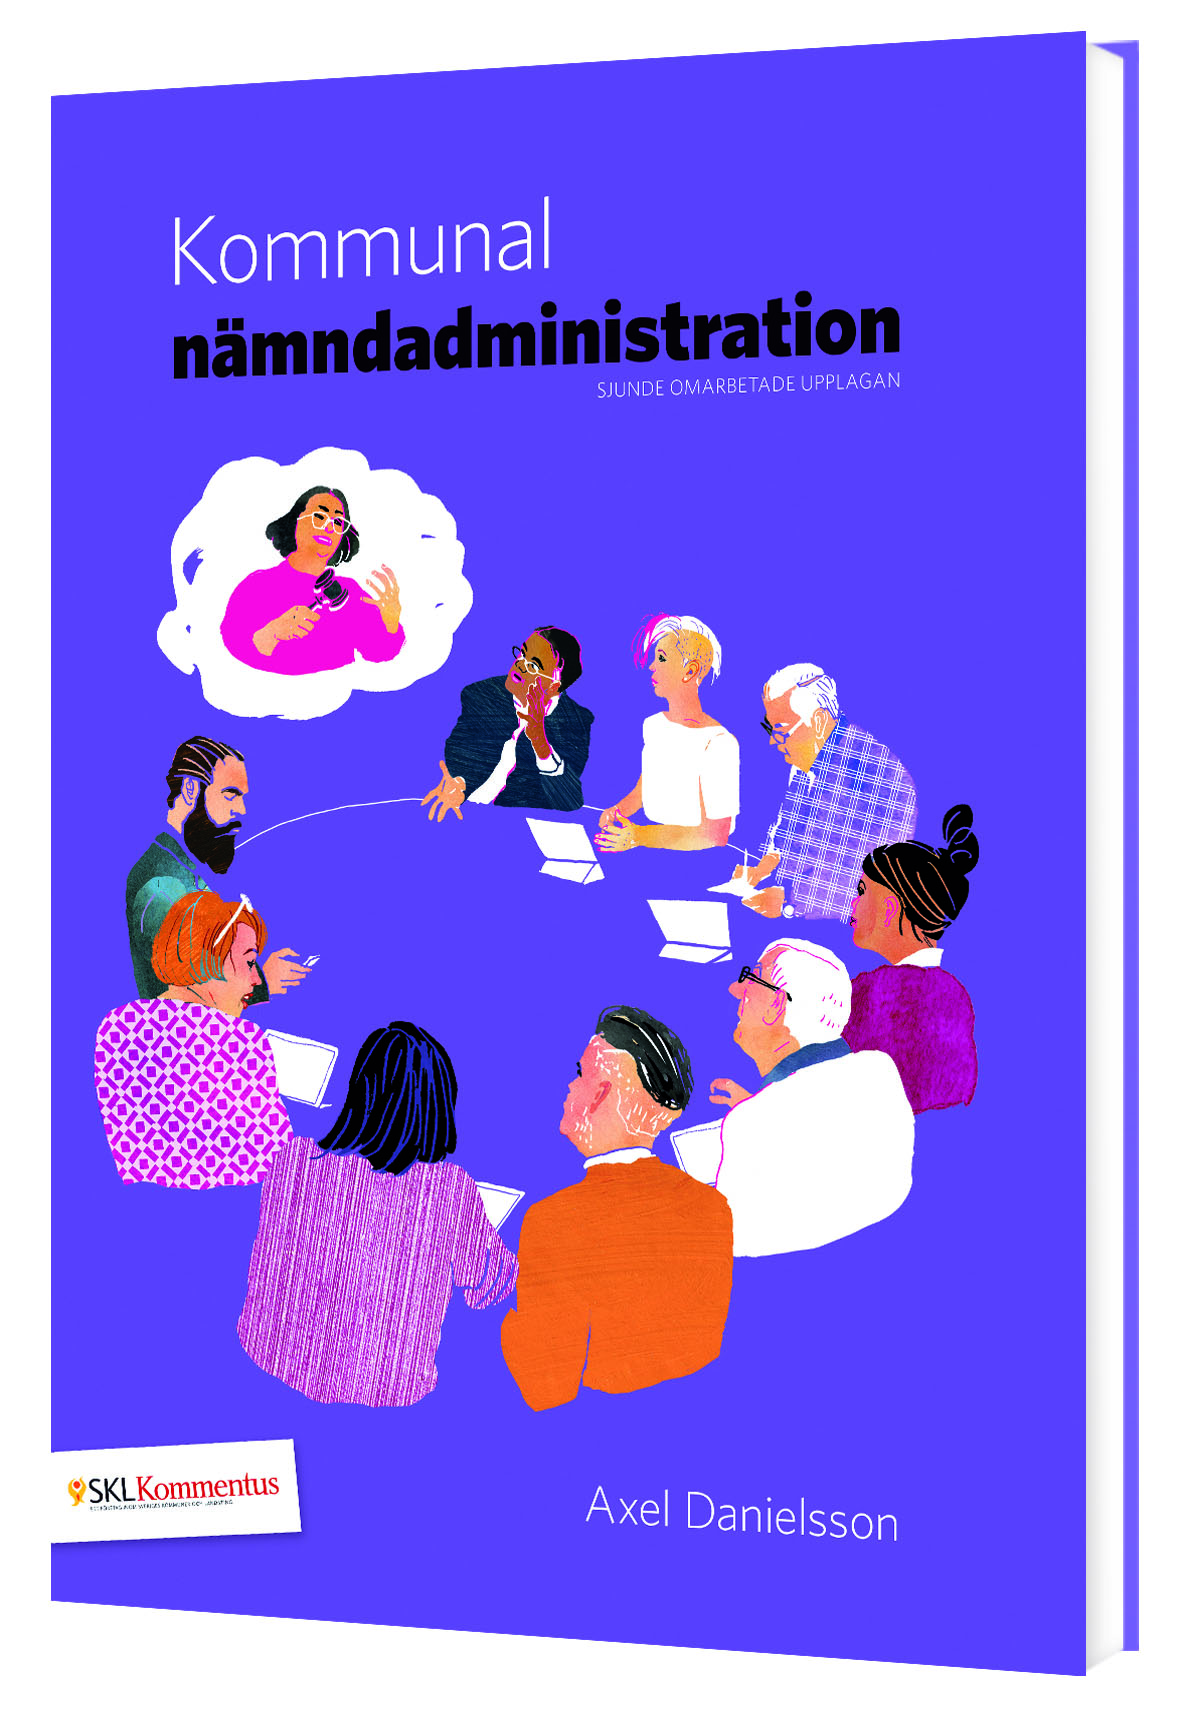 Bild för bok: 'Kommunal nämndadministration'